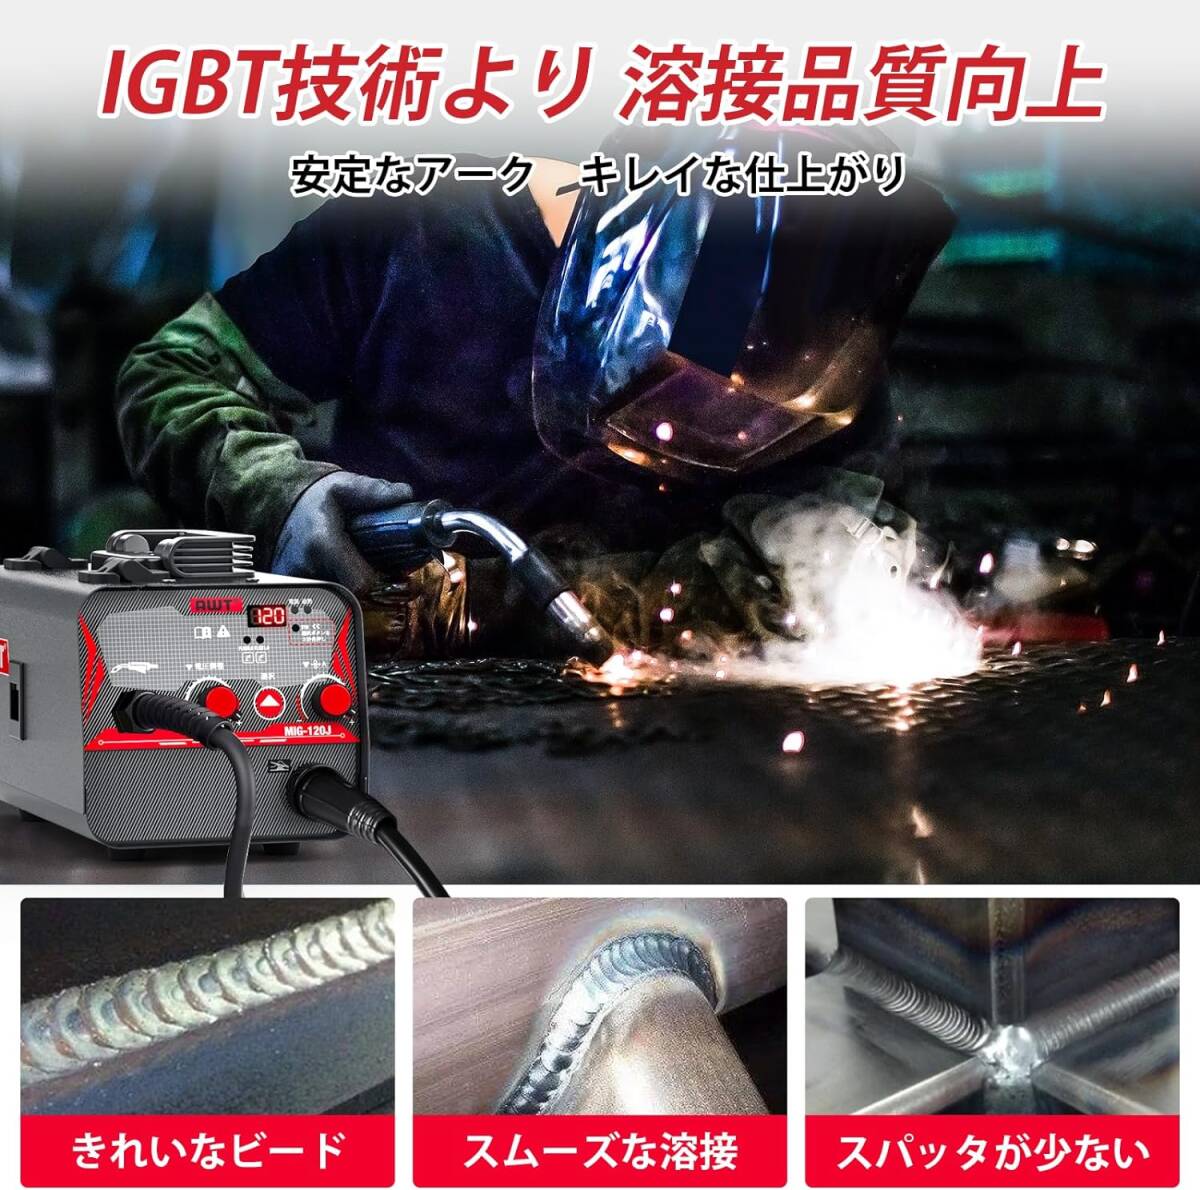  semi-automatic welding machine arc welding machine 100V maximum output 120A inverter direct current welding machine non gas MIG IGBT inverter 